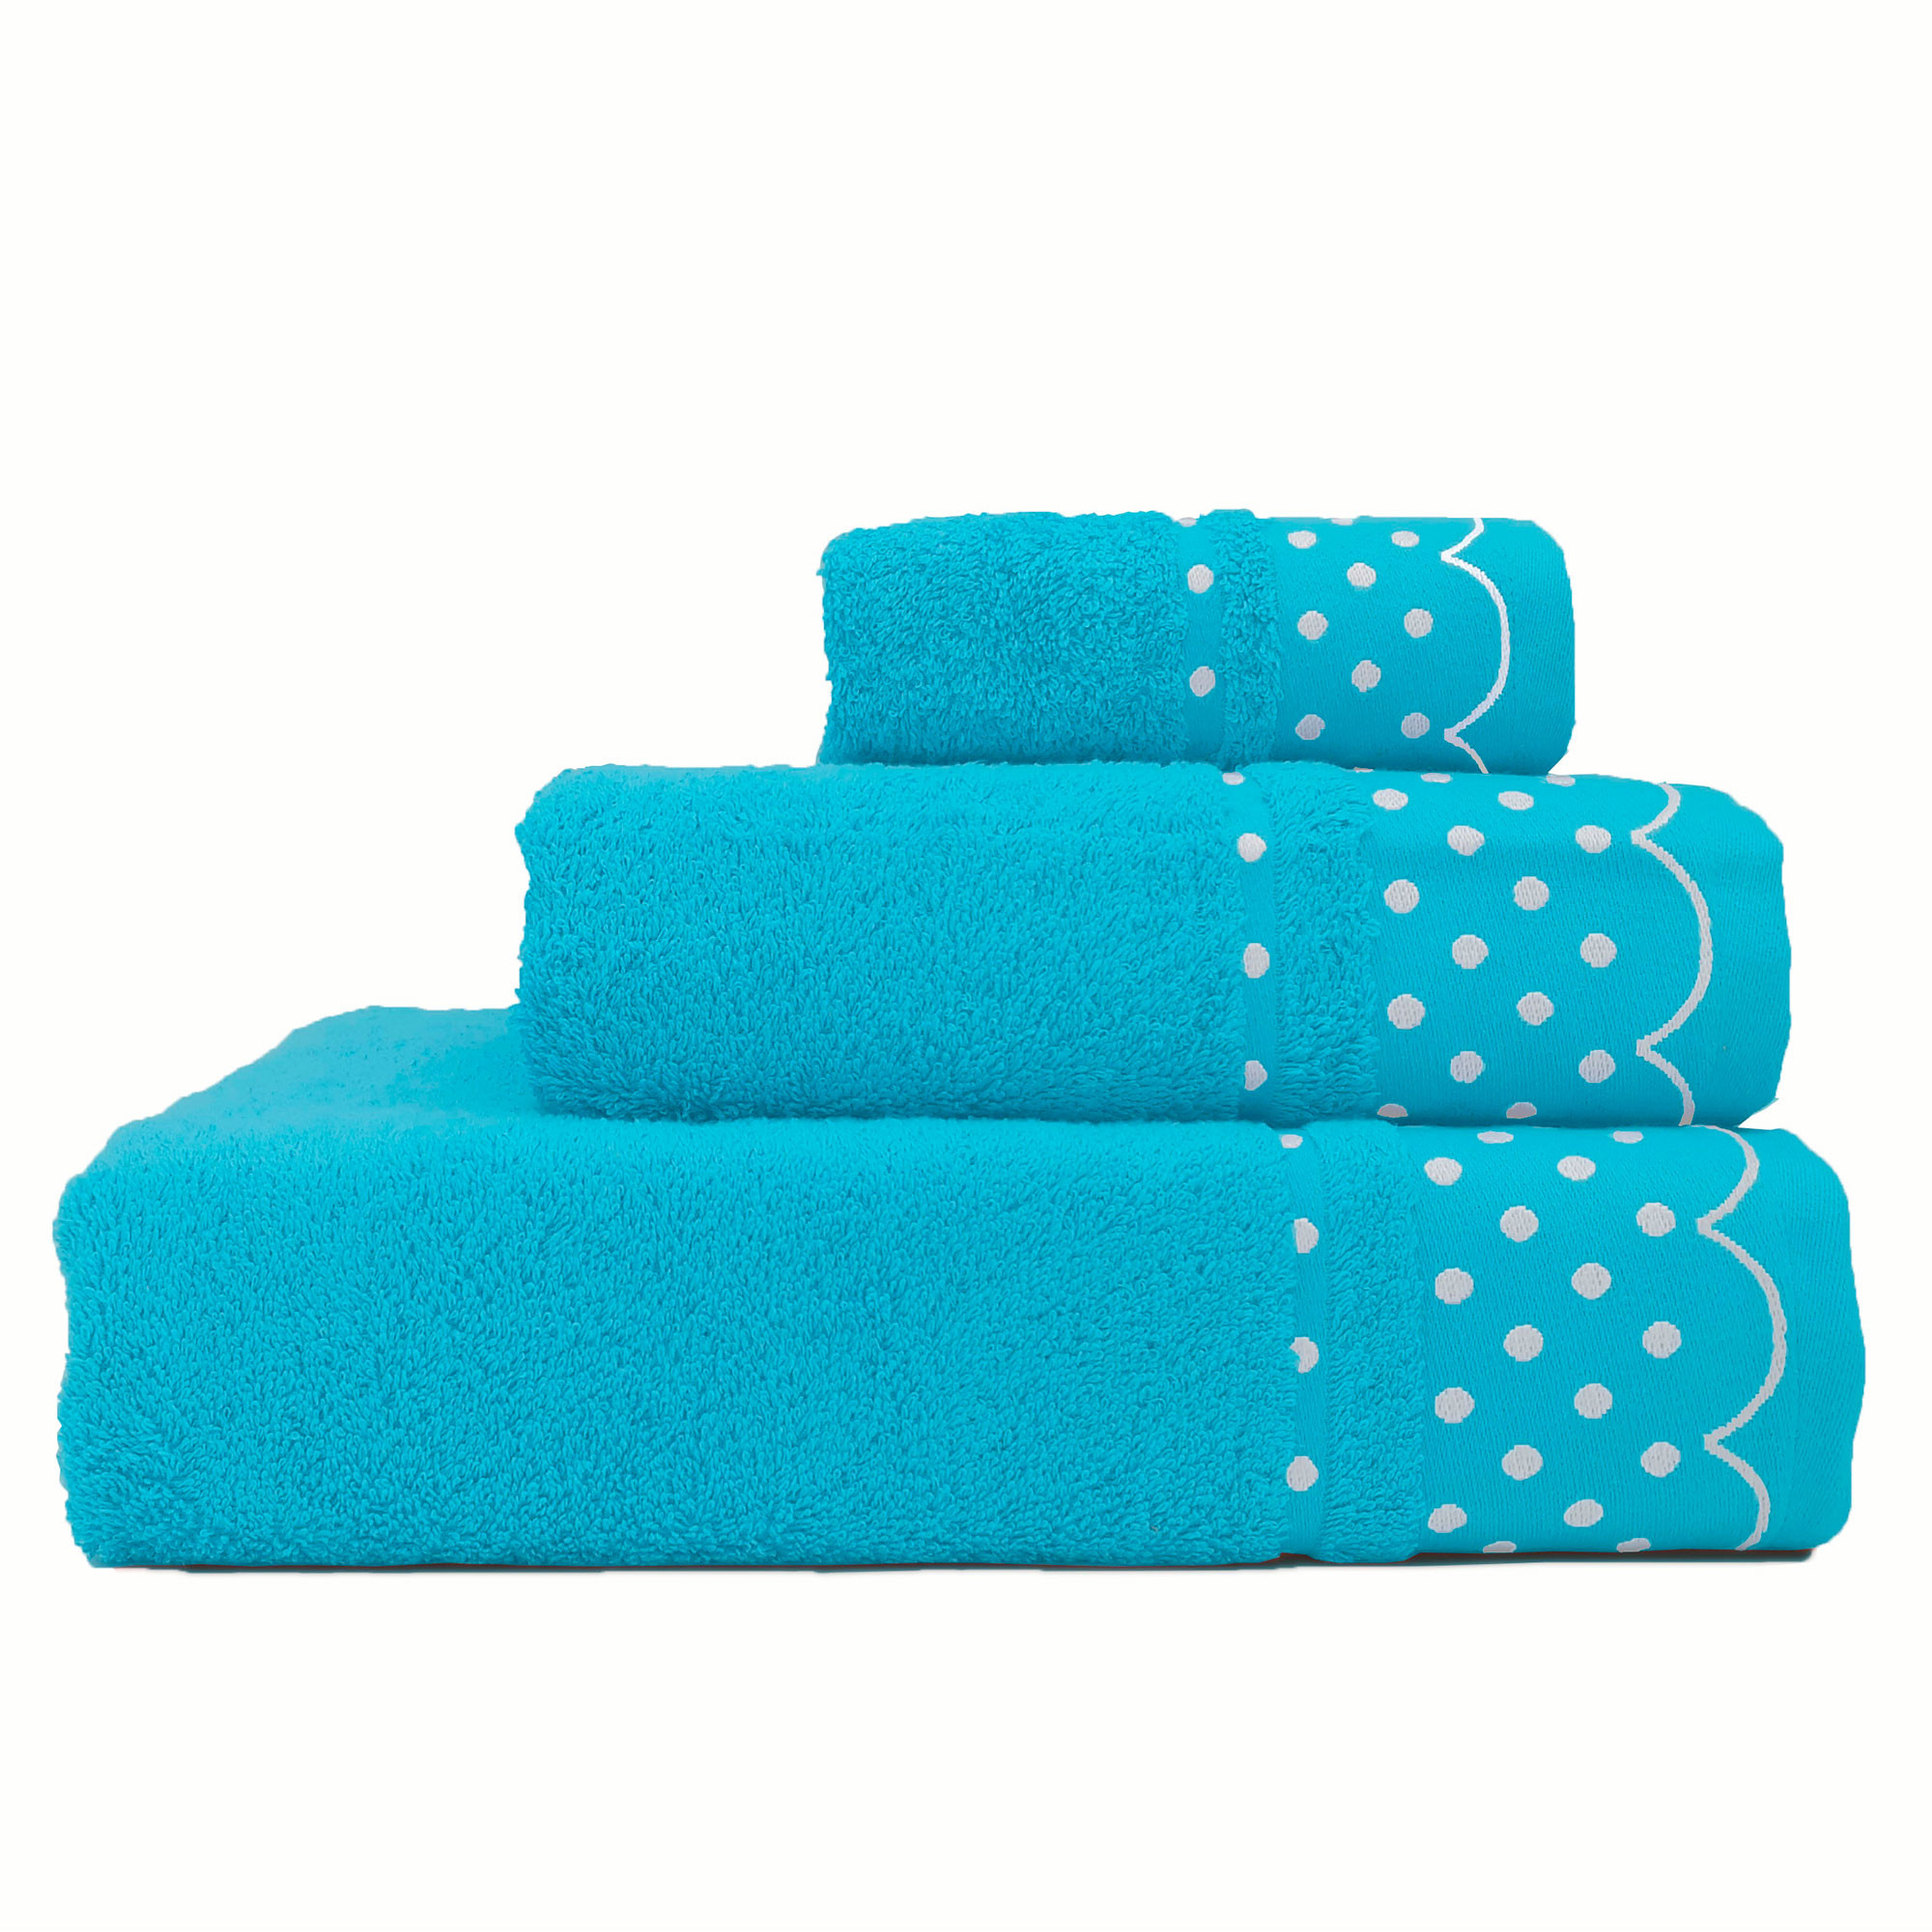 Toallas de baño azul petroleo, toallas de Portugal